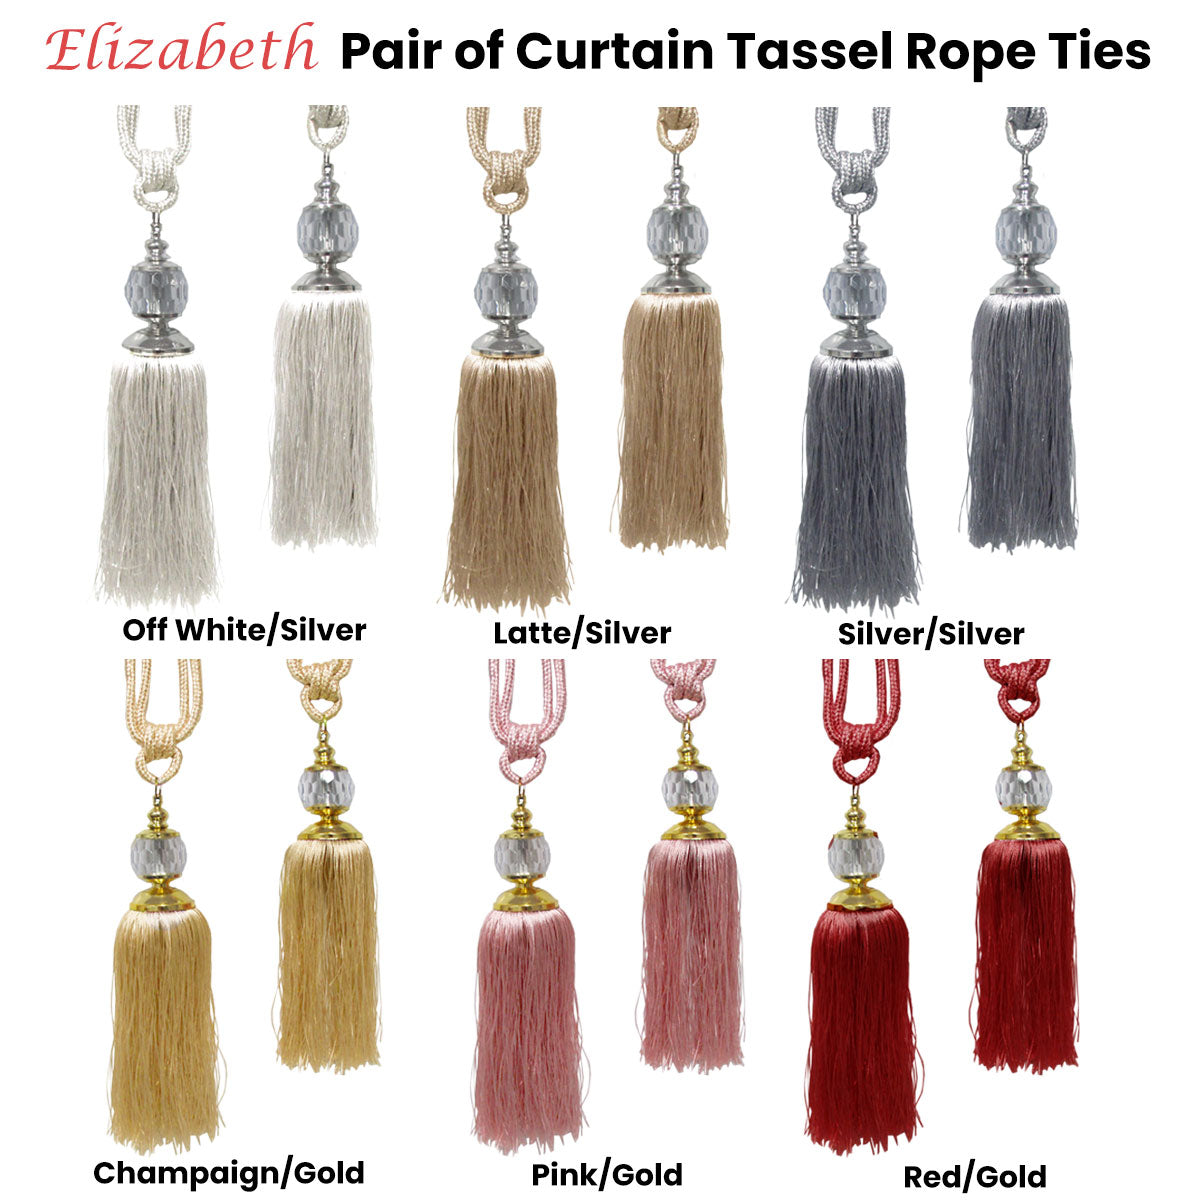 Elizabeth Pair of Curtain Tassel Rope Ties Pink/Gold - SILBERSHELL